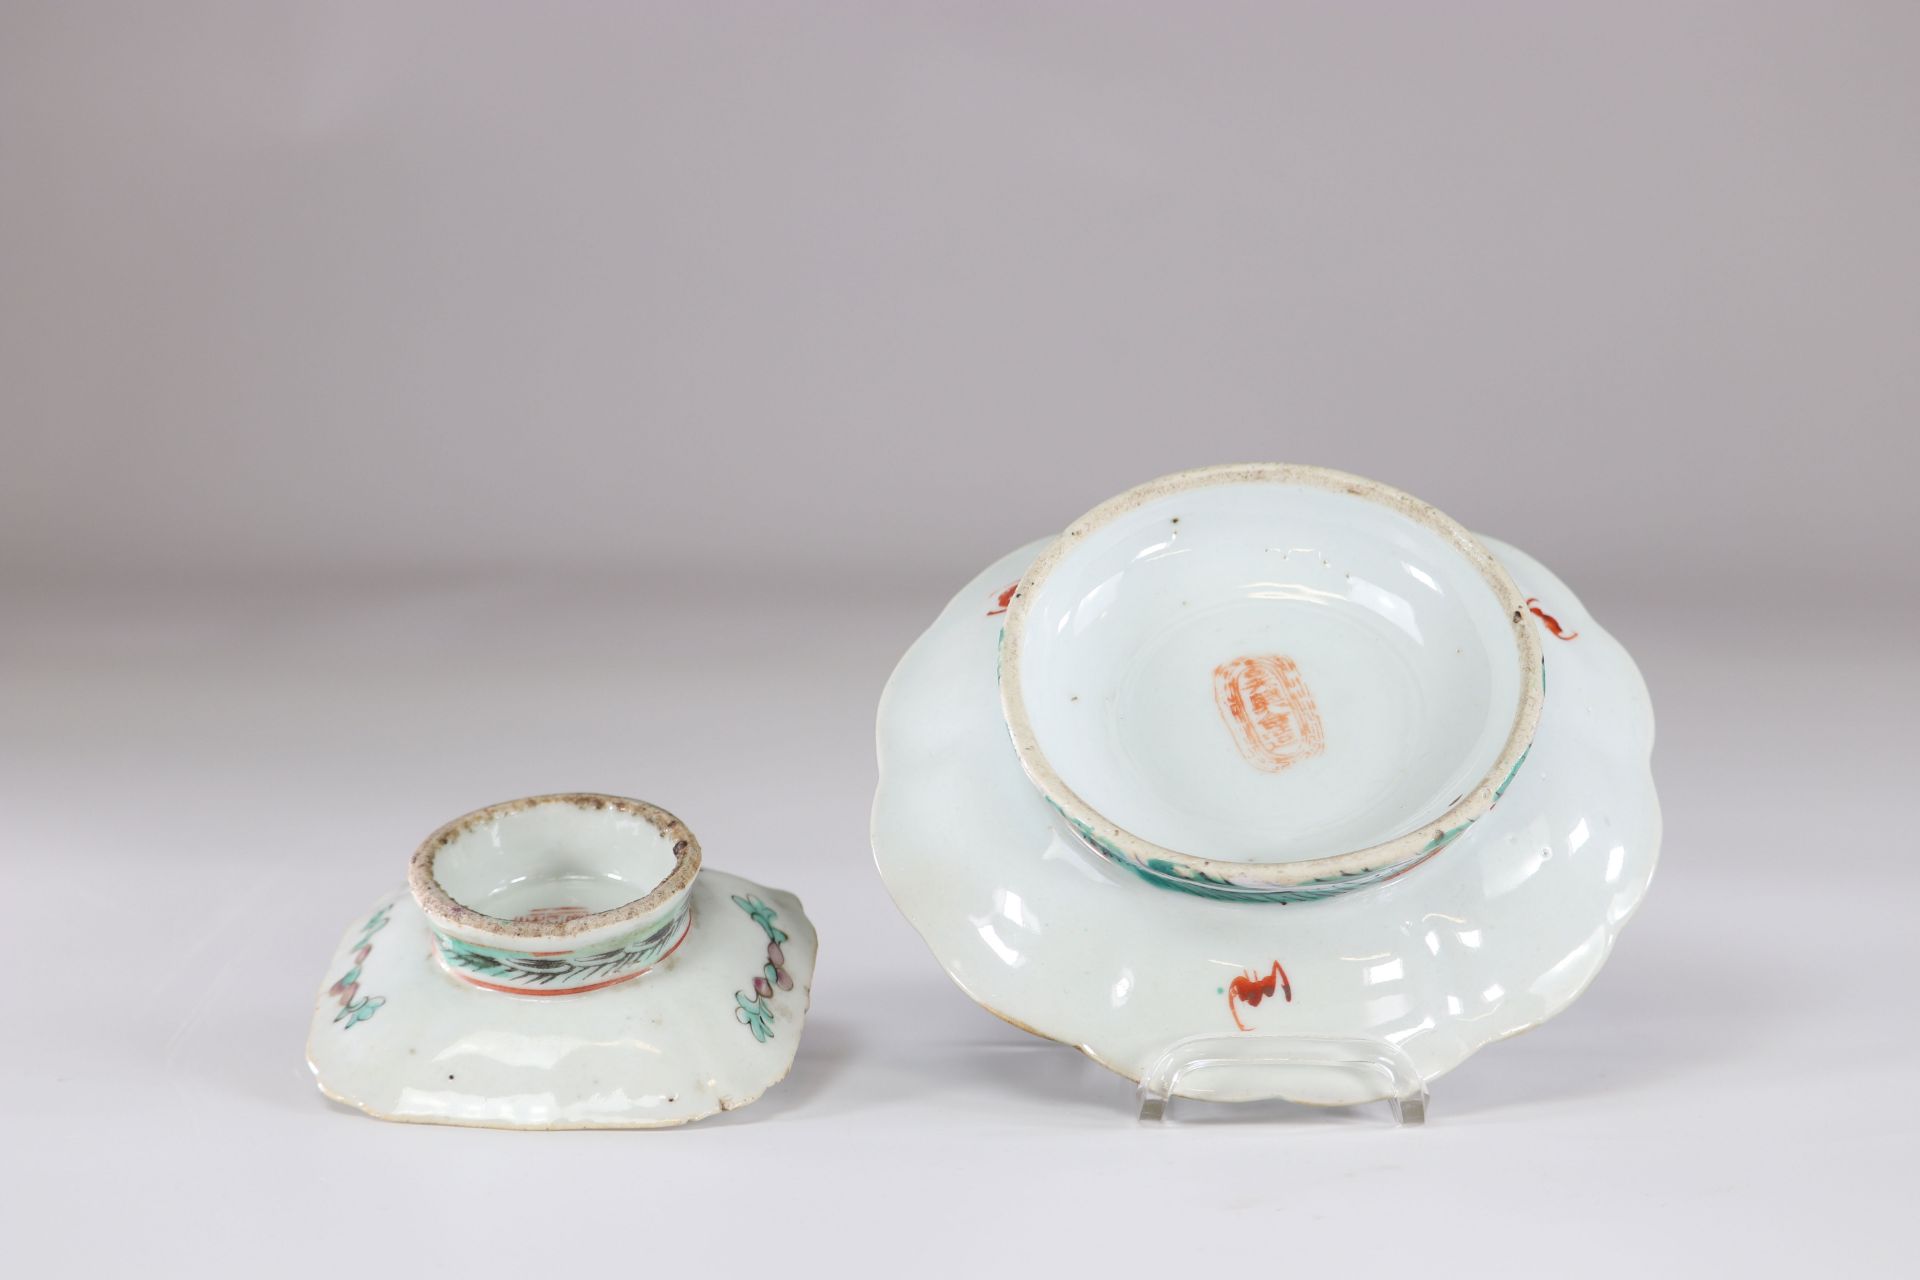 China set of 2 porcelain dish - Image 2 of 2